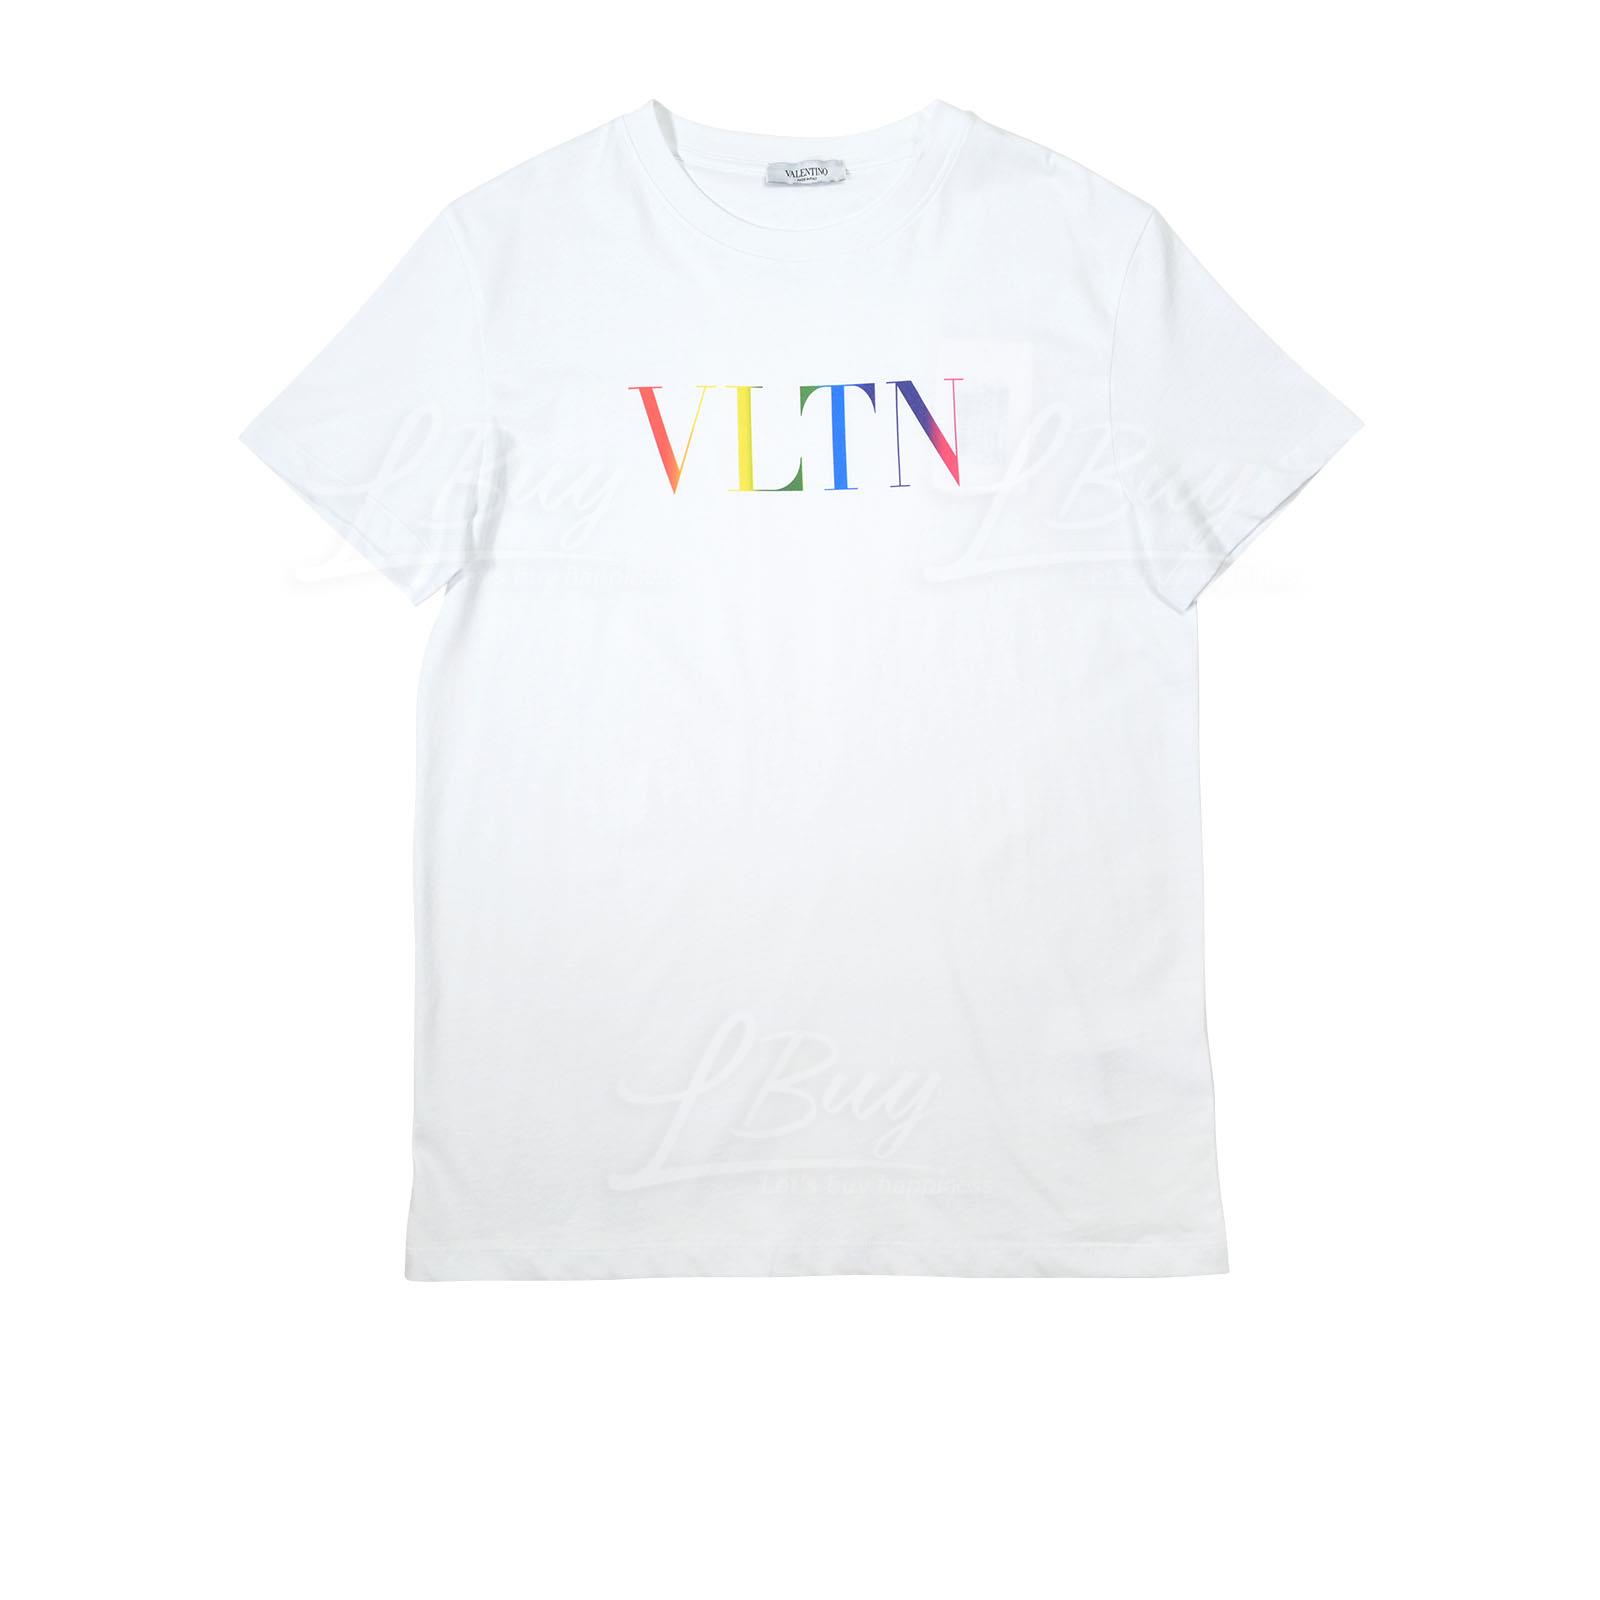 Valentino VLTN 彩色Logo 男士棉質短袖T恤 白色